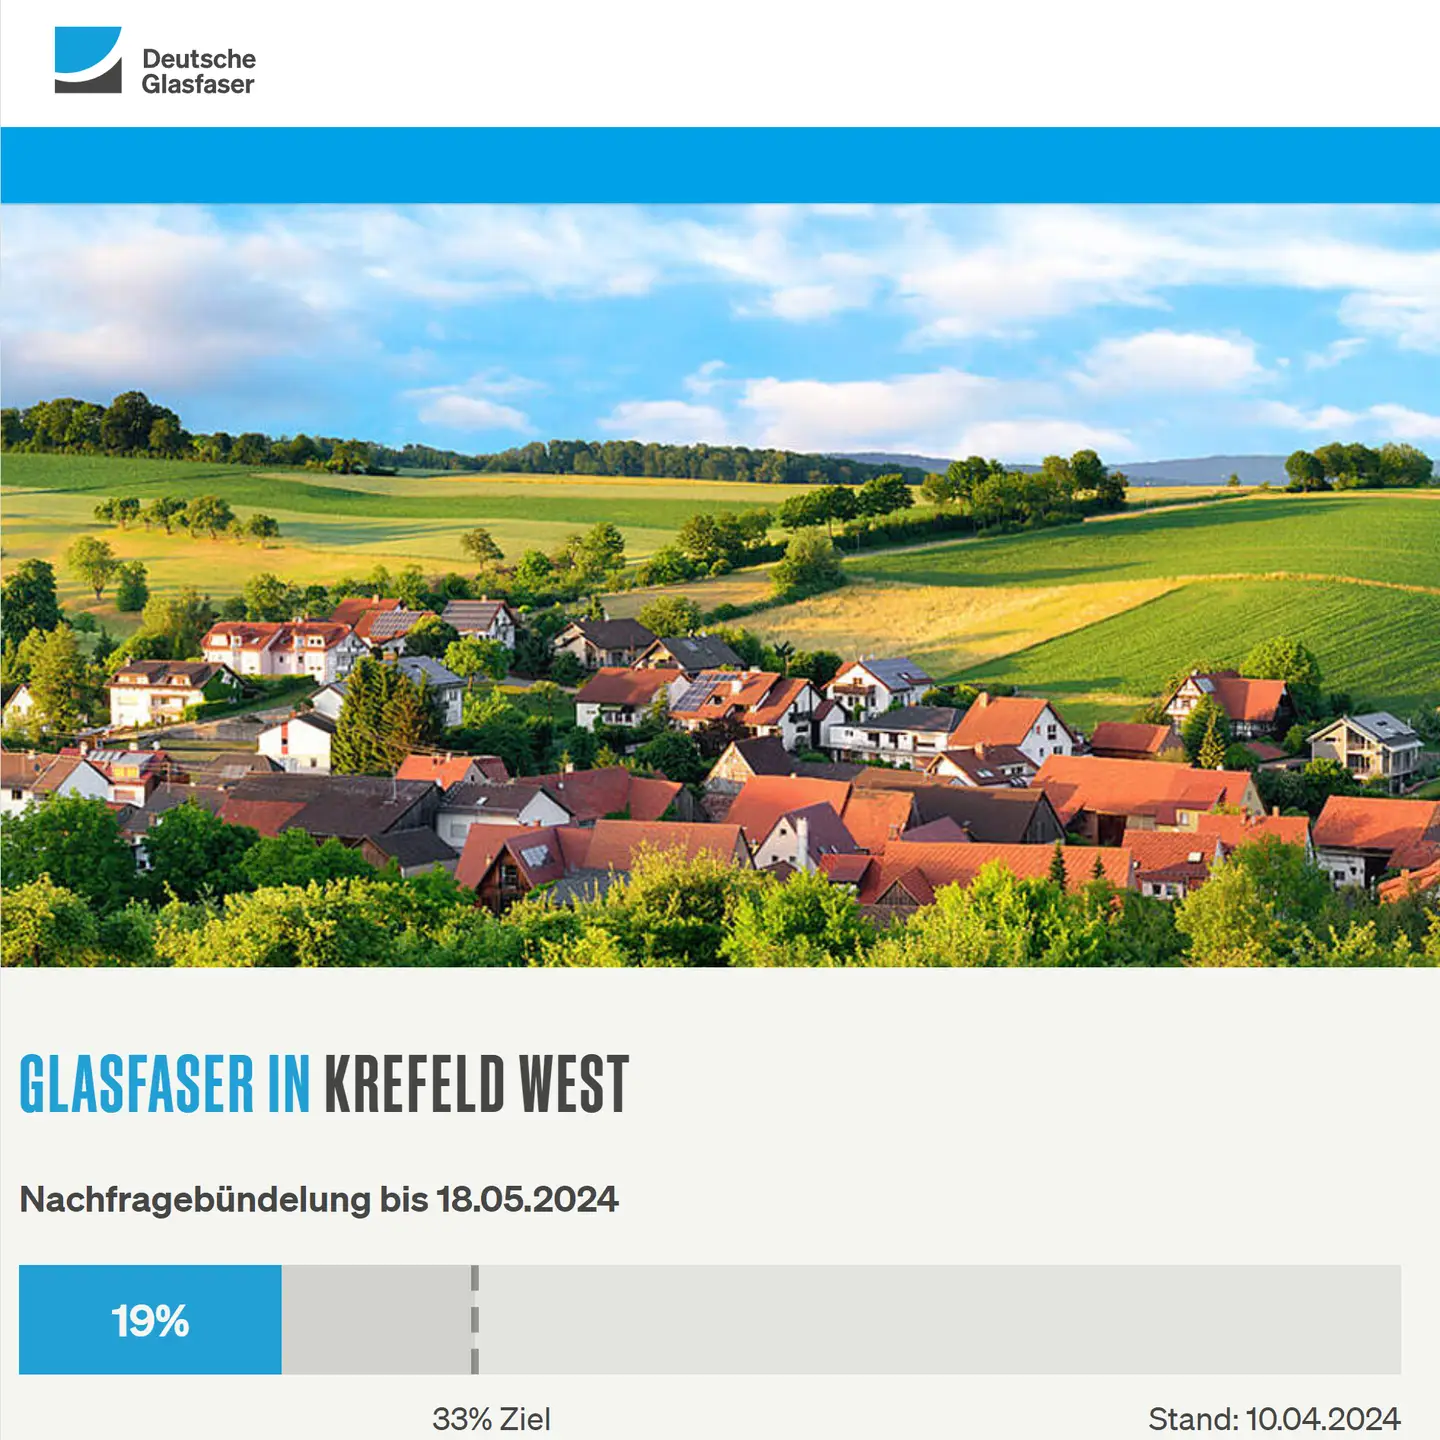 Screenshot von "Deutsche Glasfaser", oben DG Logo, ein Landschaftsbild, Schriftzüge "Glasfaser in Krefeld-West", Nachfragebündelung bis 18.5.2024, Anzeige der aktuellen Prozentzahl 19%, von 33% Ziel